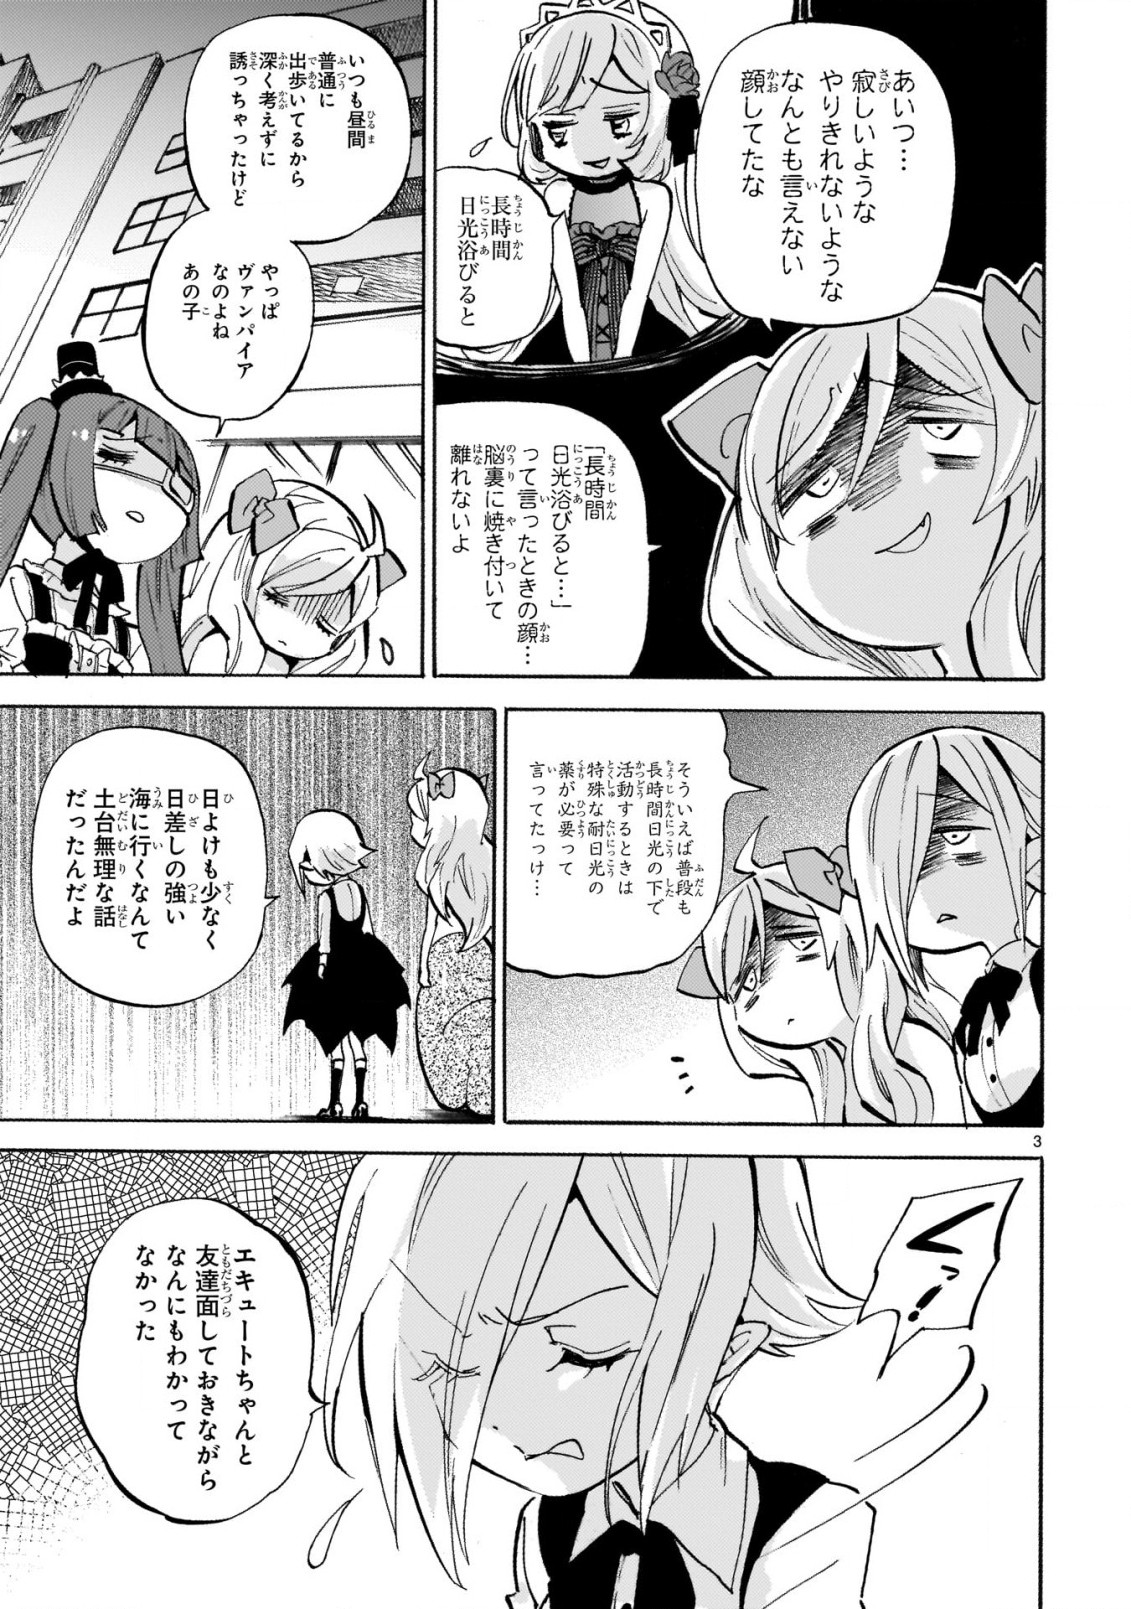 Jashin-chan Dropkick - Chapter 237 - Page 3